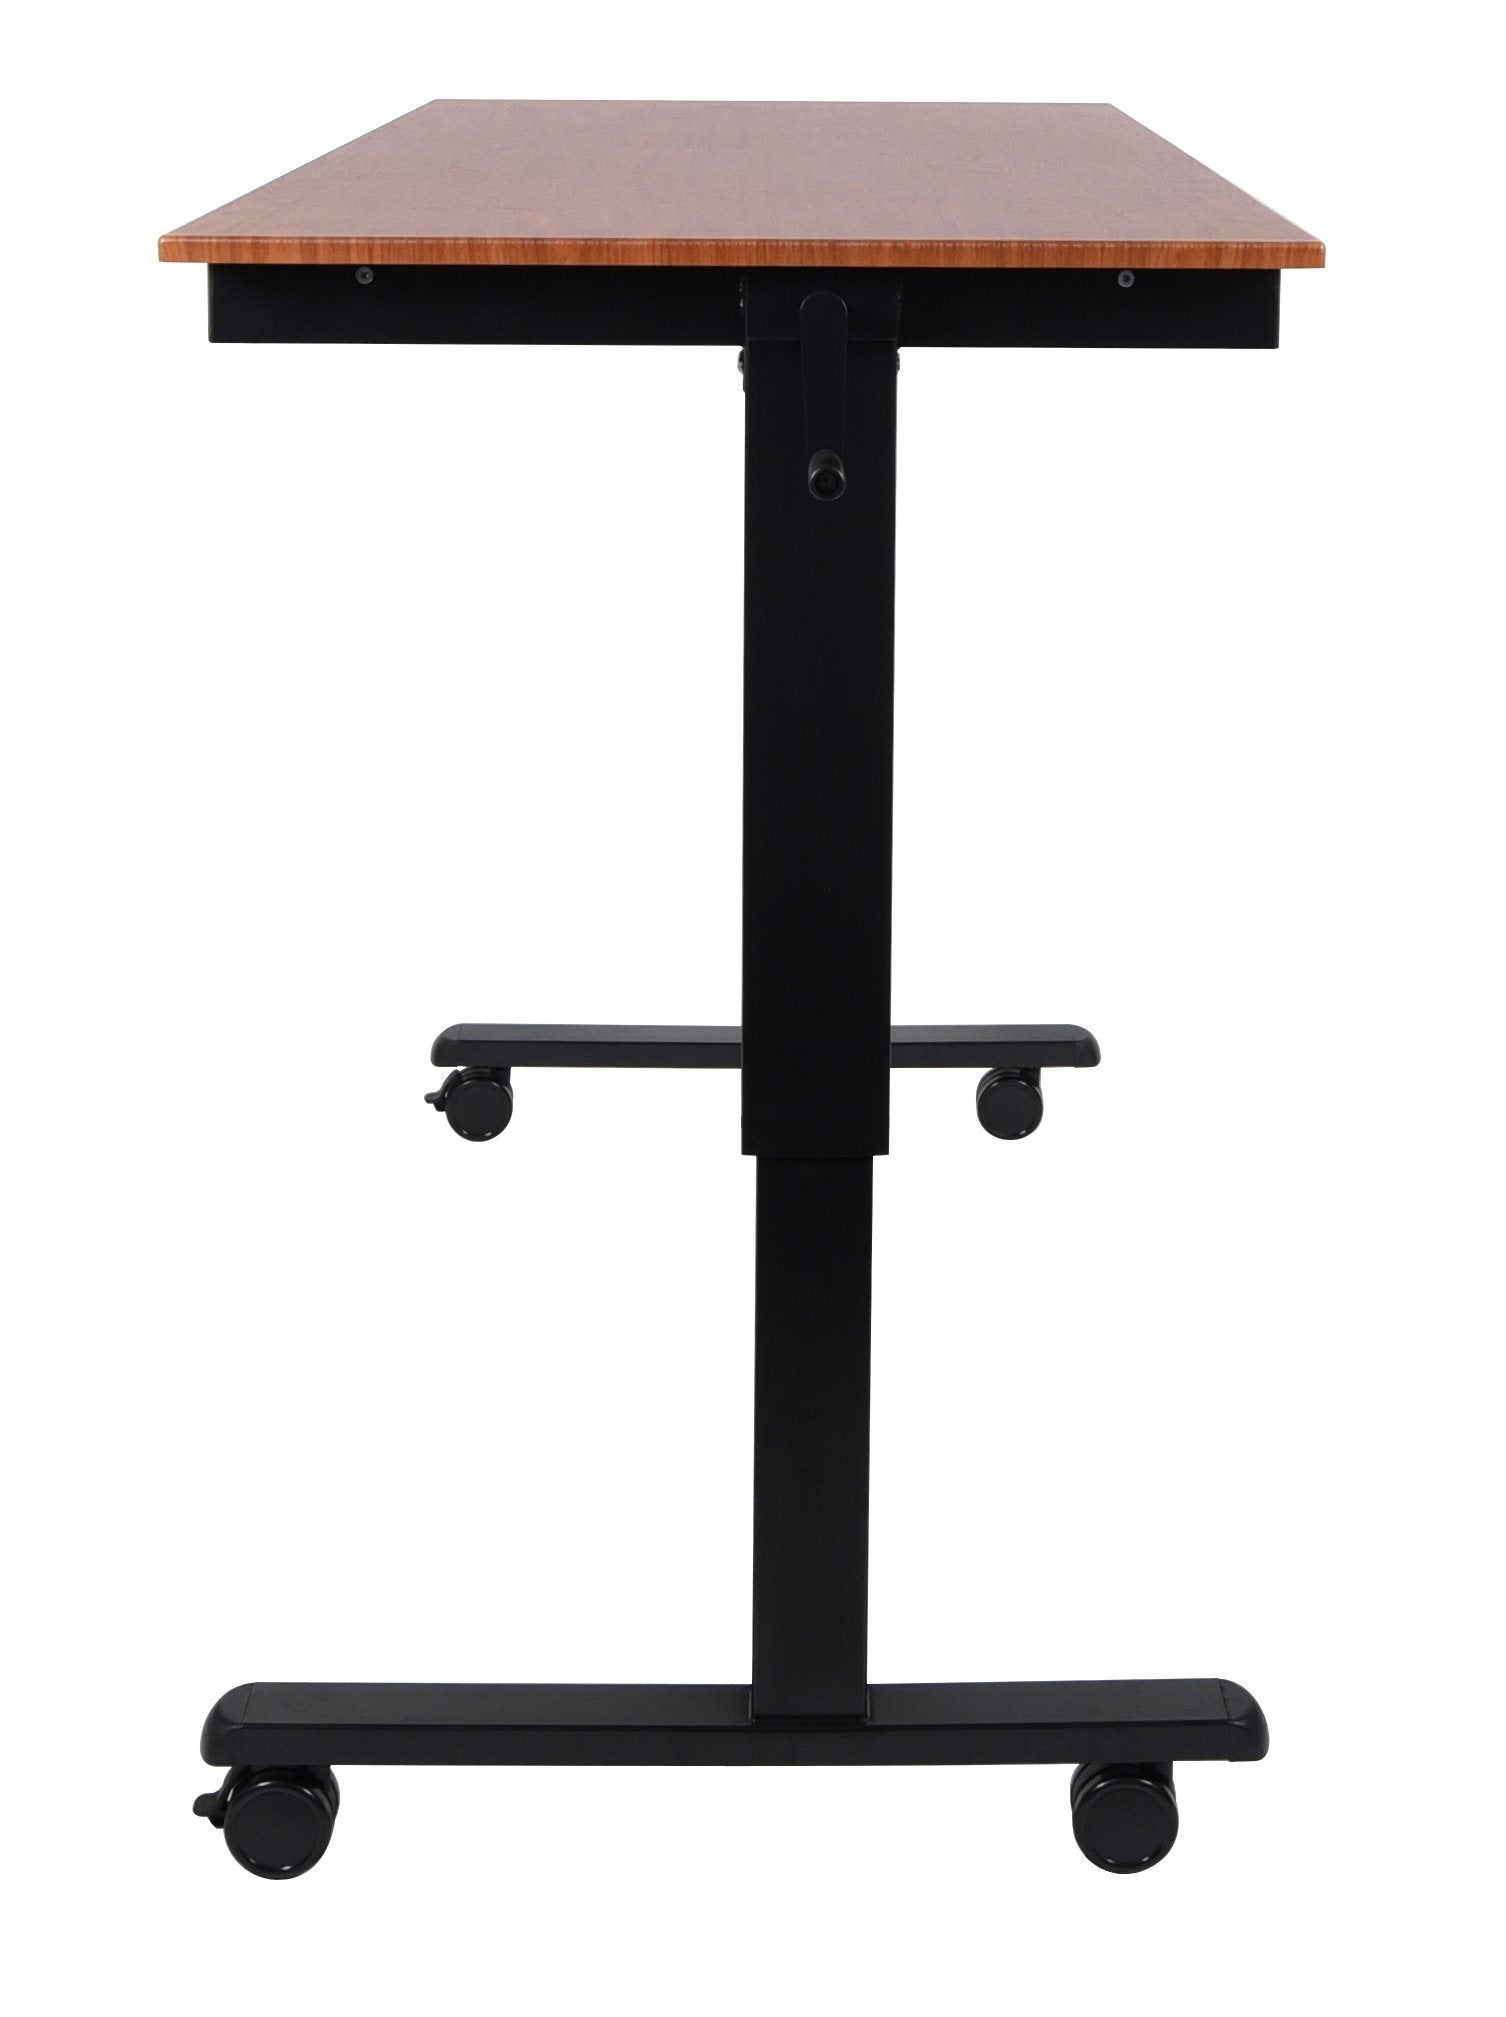 Luxor STANDCF60-BK/TK Crank Adjustable Stand Up Desk